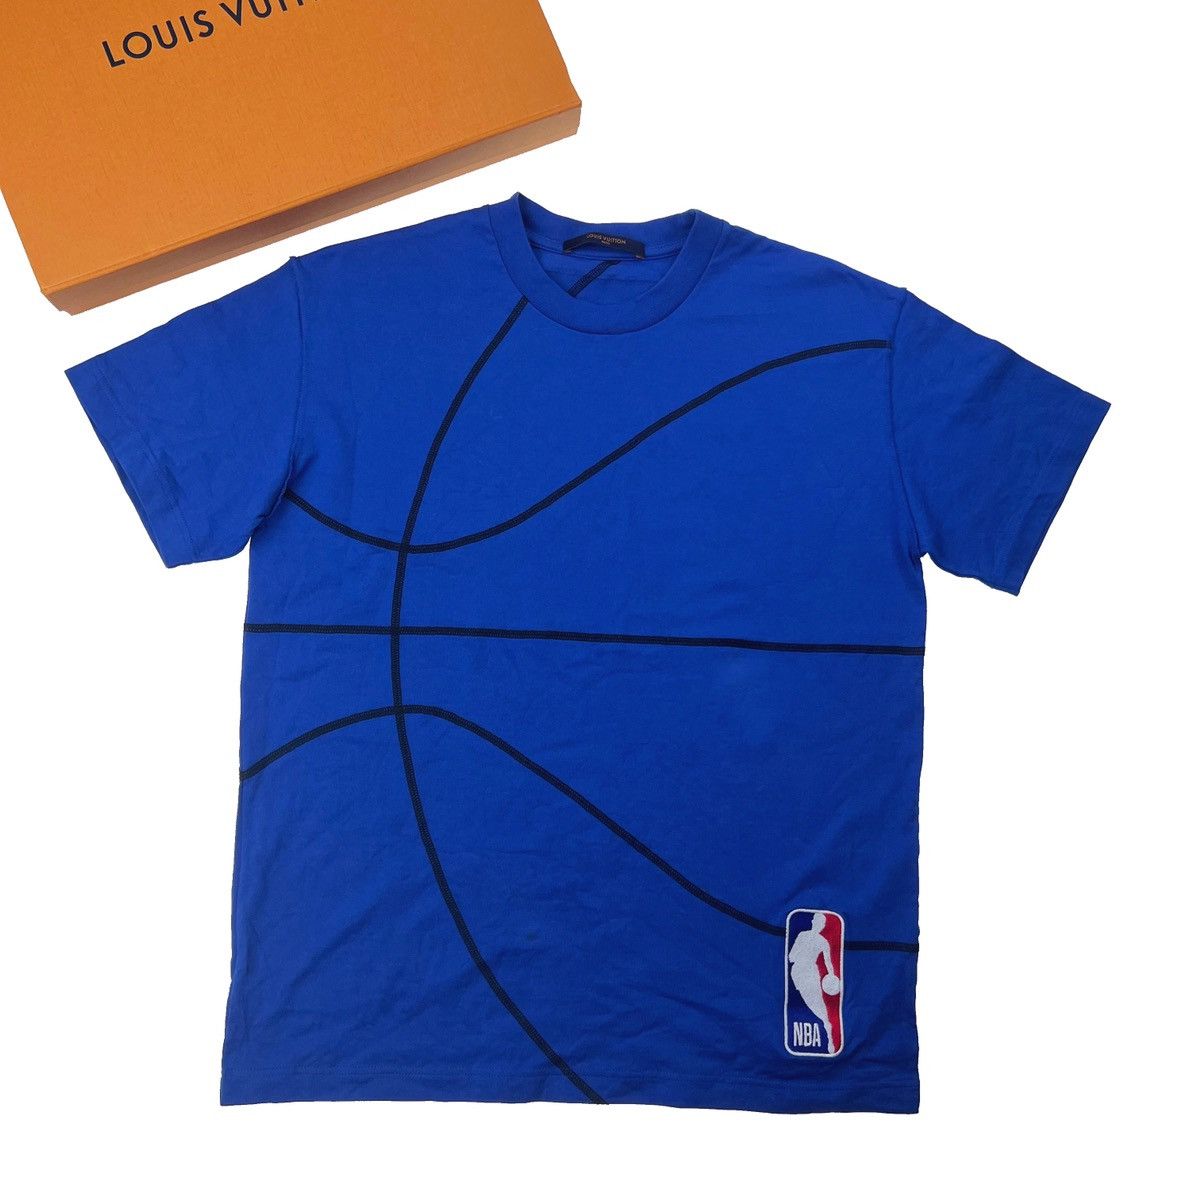 Louis Vuitton x NBA T shirt  Louis vuitton t shirt, Nba t shirts, T shirt